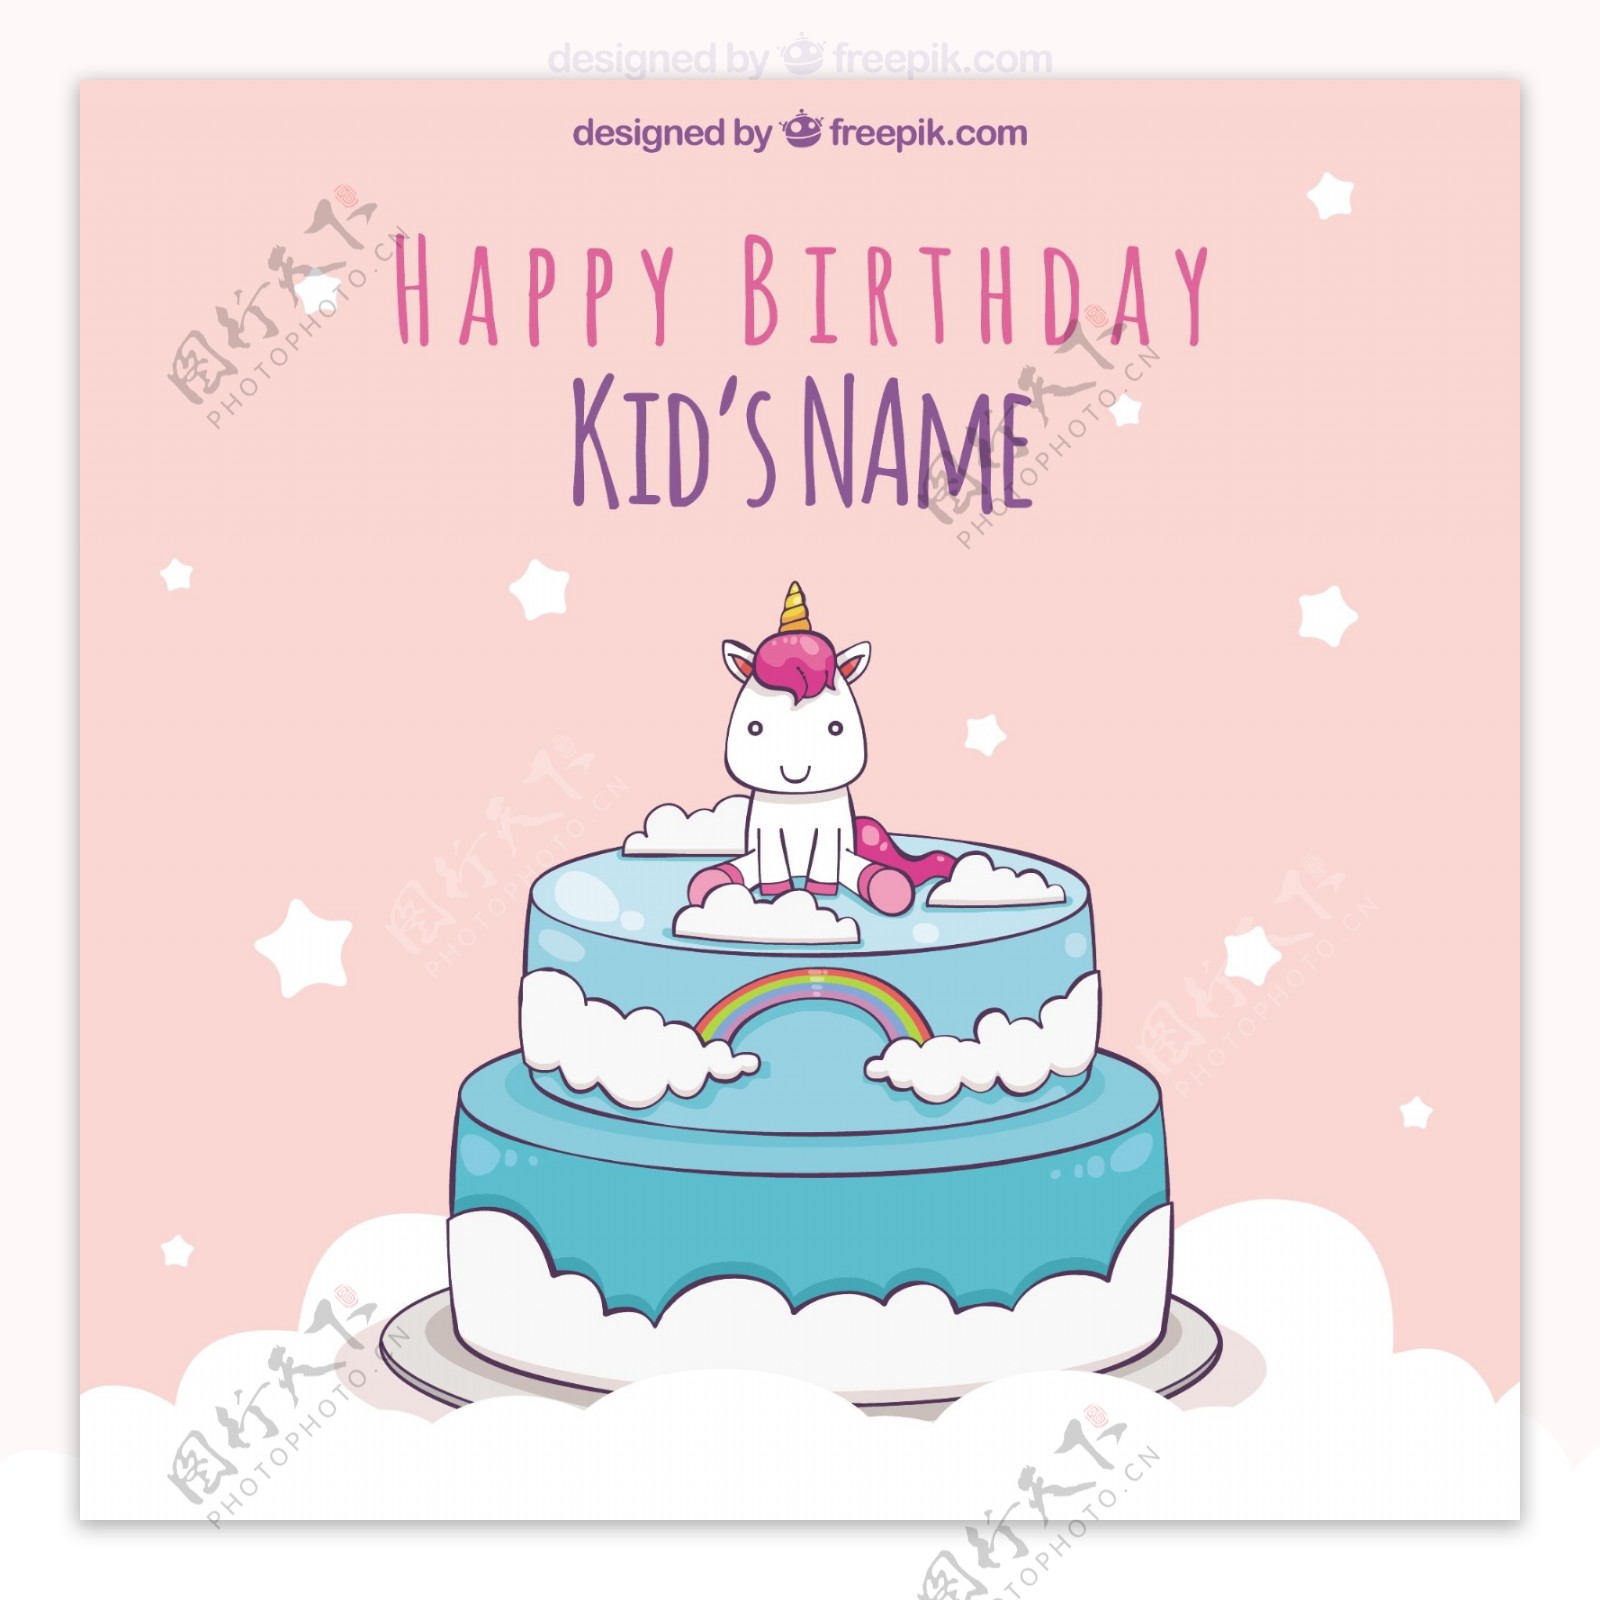 独角兽的生日背景在蛋糕的顶部